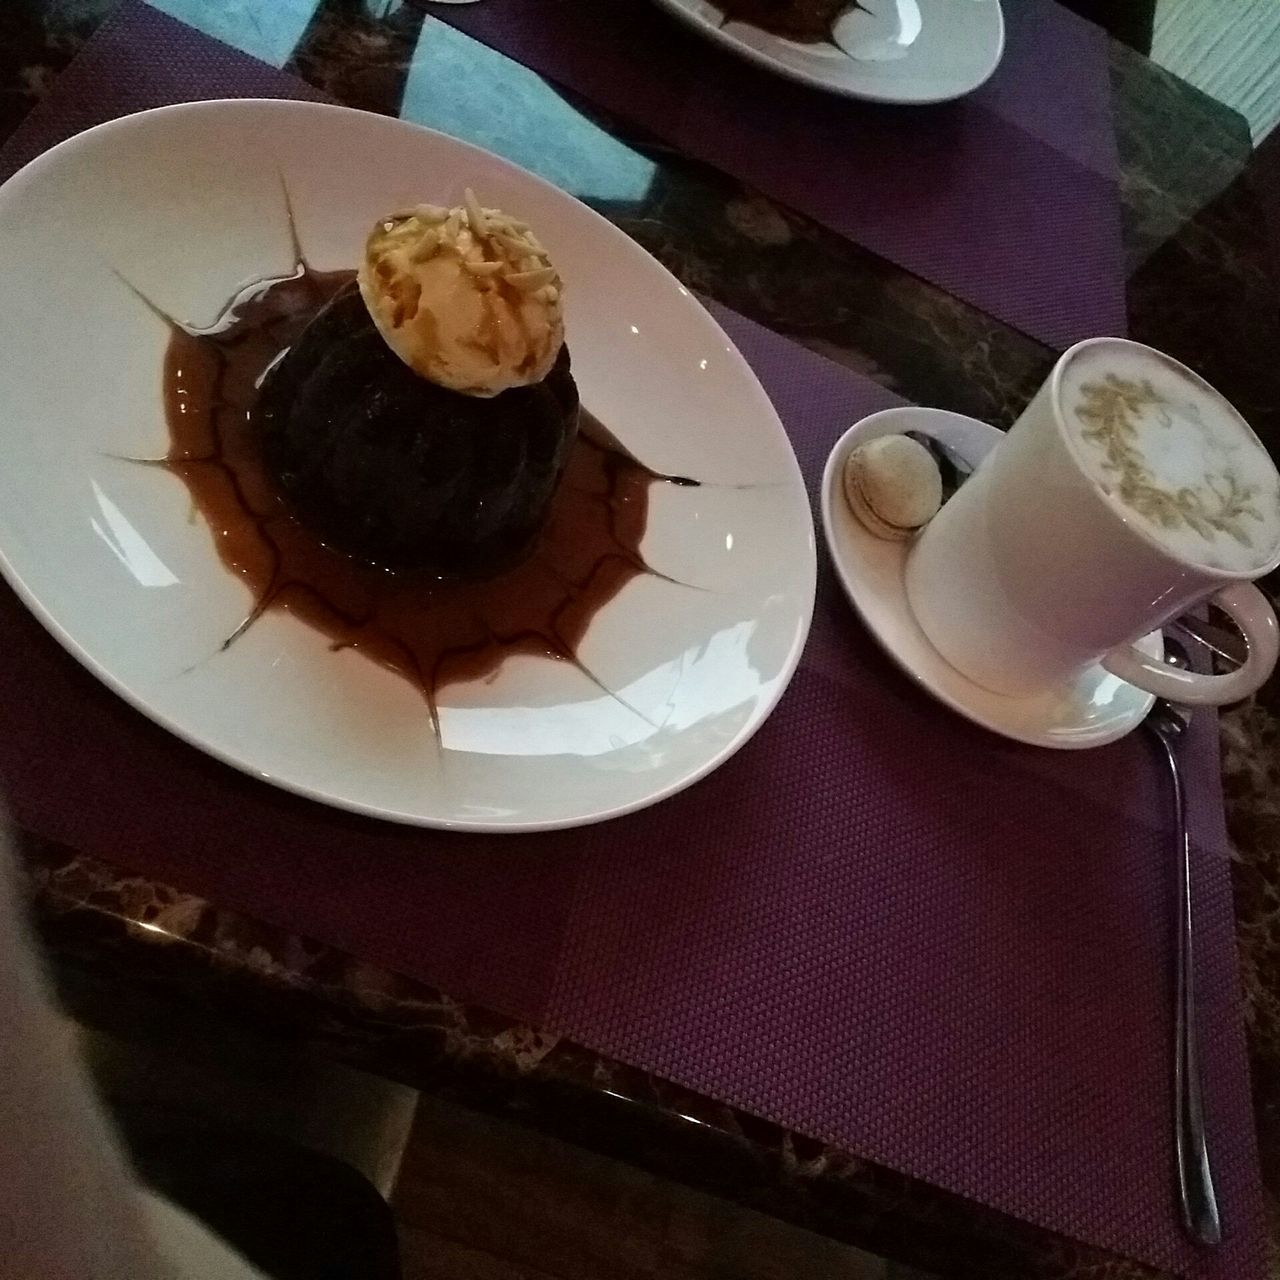 Viola Cafe